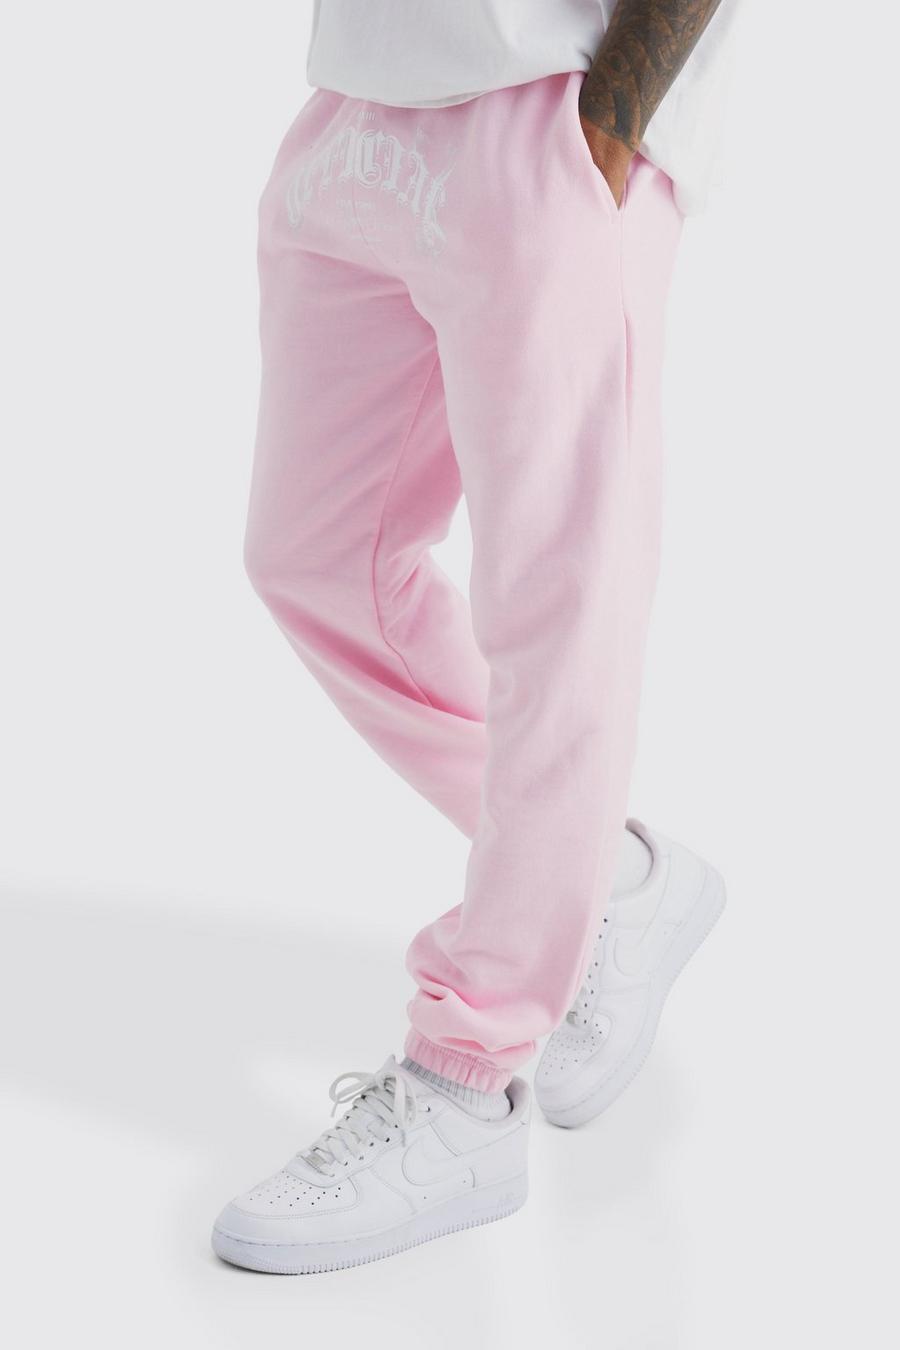 Pantaloni tuta Official con grafica color fumo, Light pink